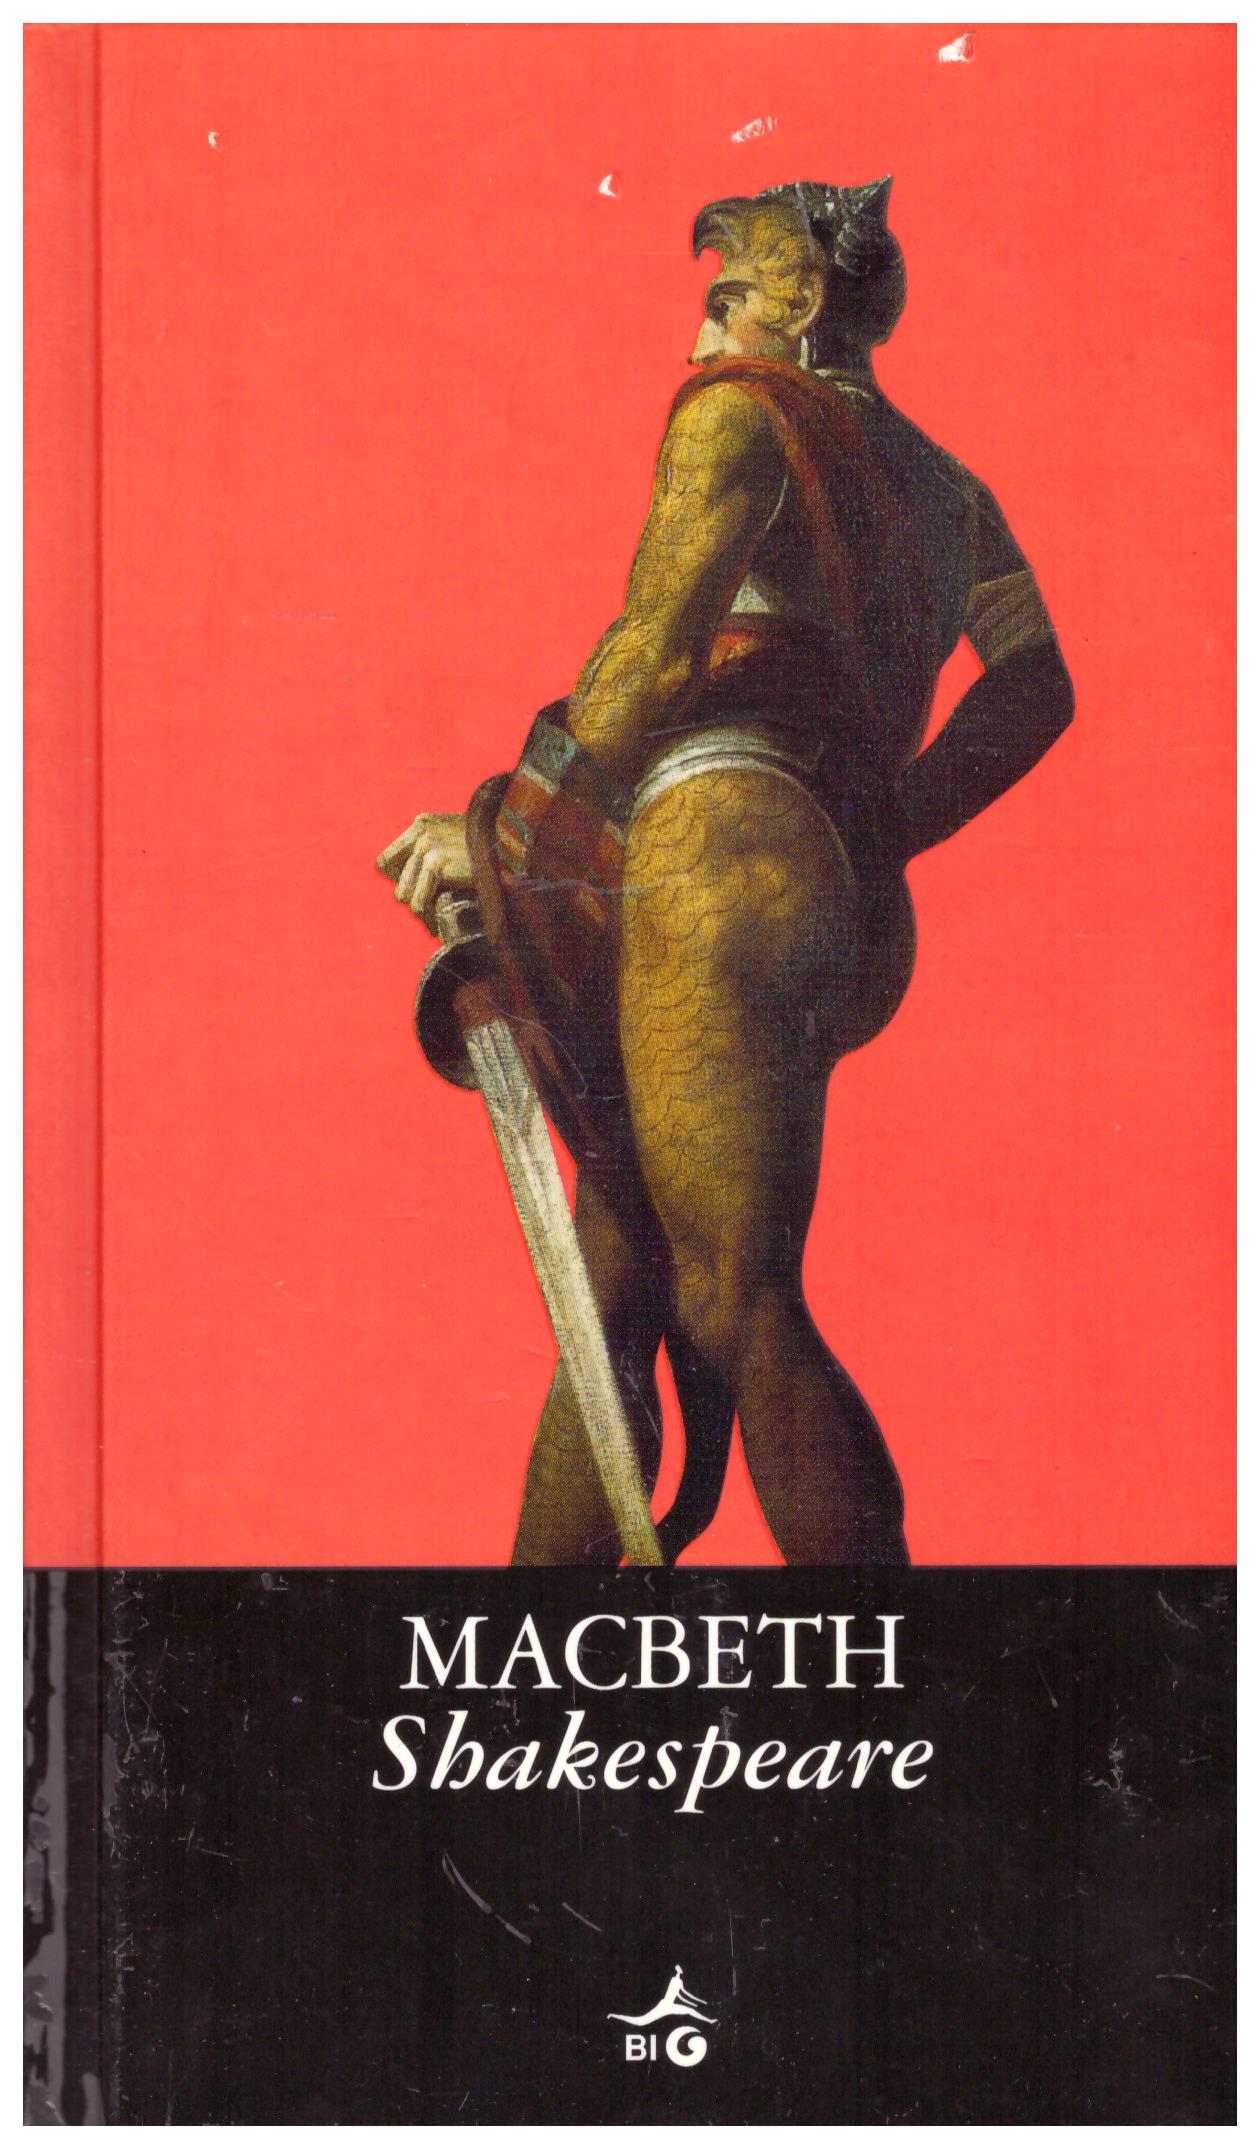 Titolo: Macbeth Autore: Shakespeare Editore: Big, 2006